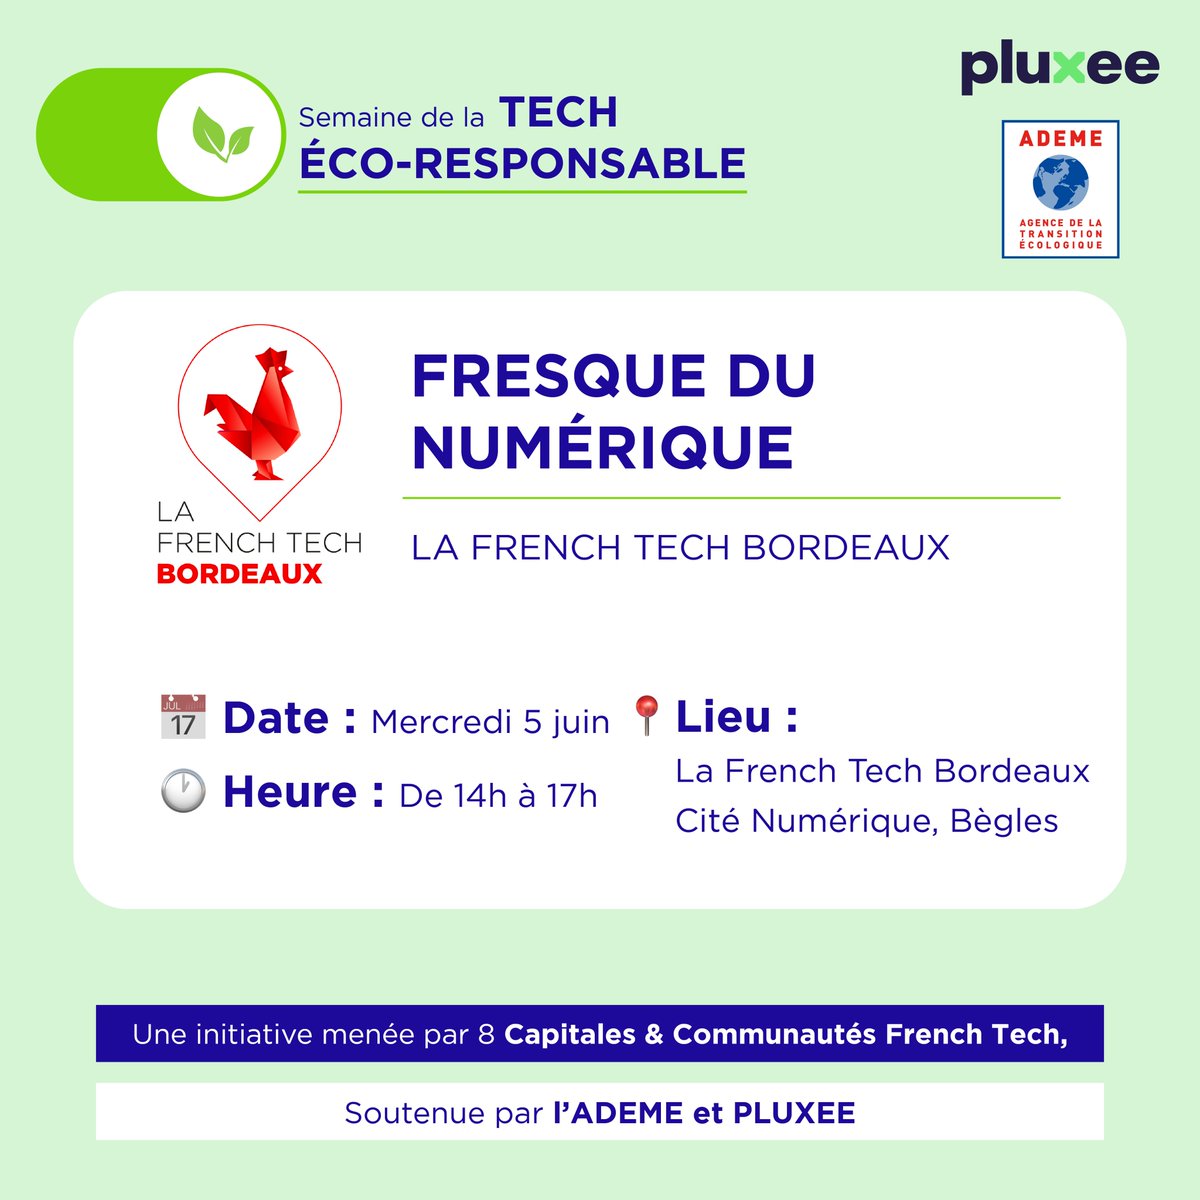 En collaboration avec 8 capitales et communautés #FrenchTech, l’@ademe et  @Pluxee_France, nous organisons une grande Fresque Nationale du Numérique 💻

Objectif 👉 former et sensibiliser plus de 200 startups en France, sur les enjeux environnementaux de la #Tech 🌱

Suite👇